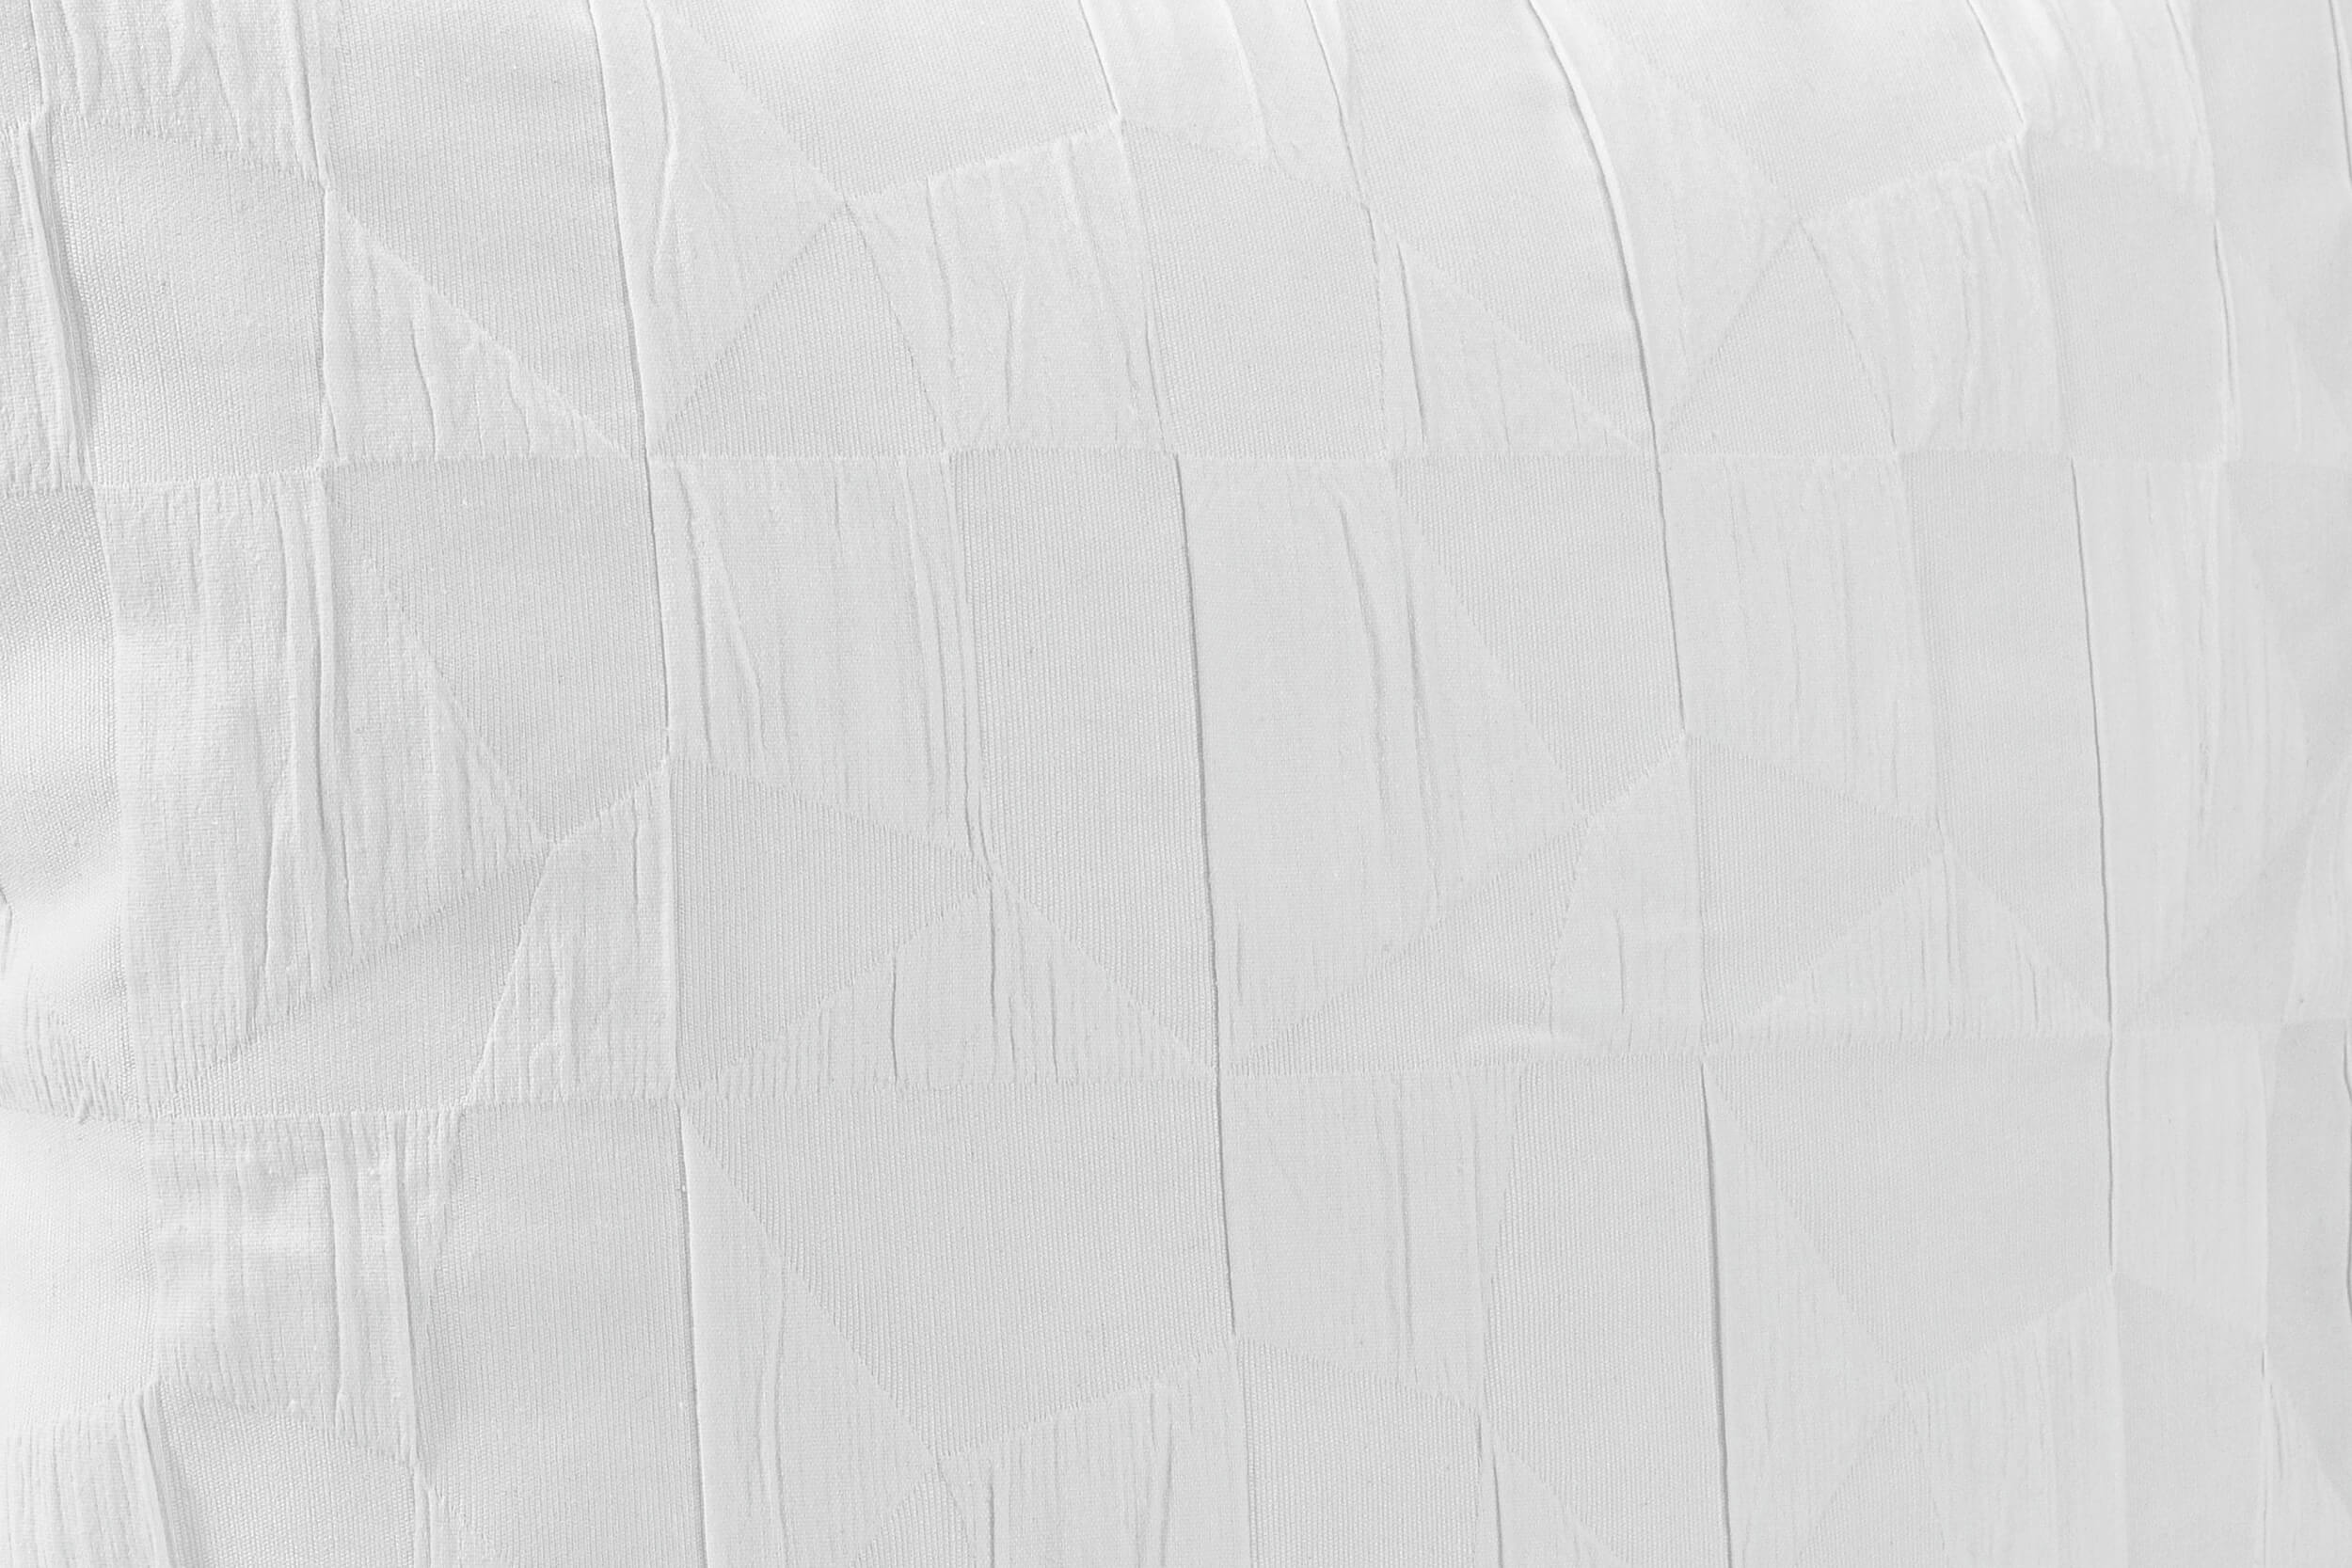 Recycled Kissenbezüge + Hüllen Weiß einfarbig mit Muster Loft. Perfekt in jeder Größe.